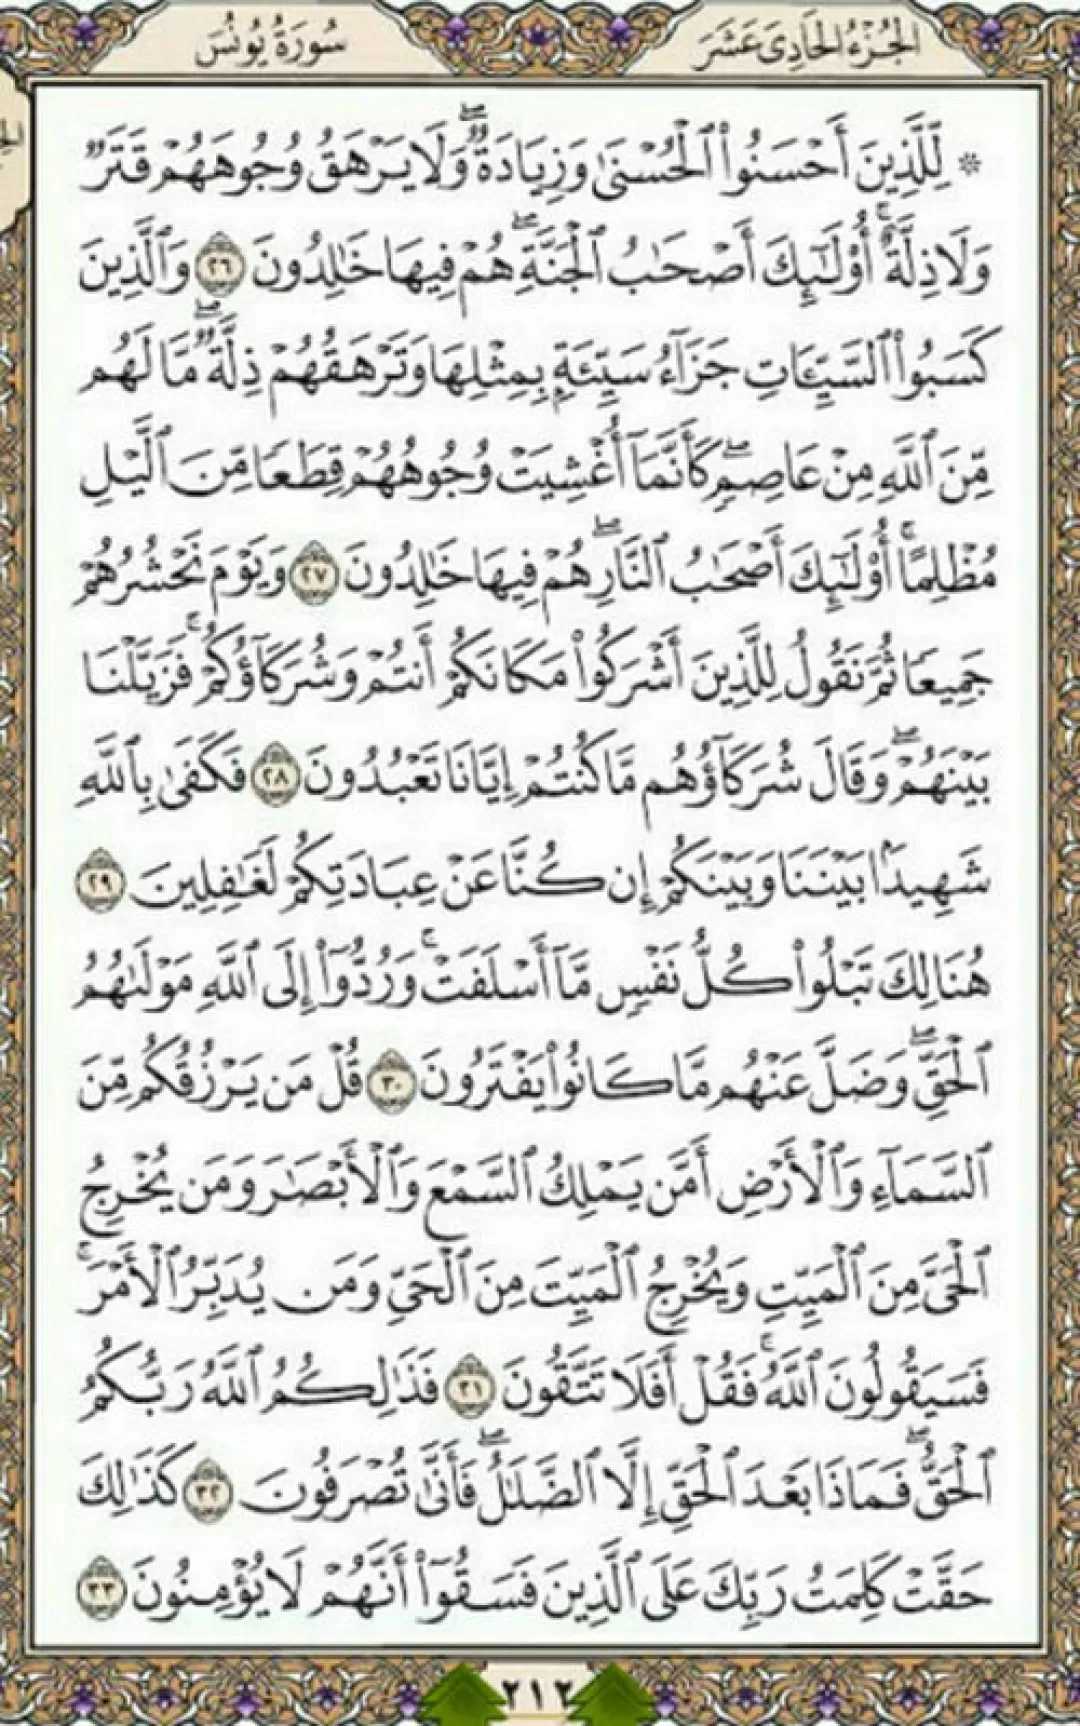 یک صفحه با نورانیت کلام قرآن مجید